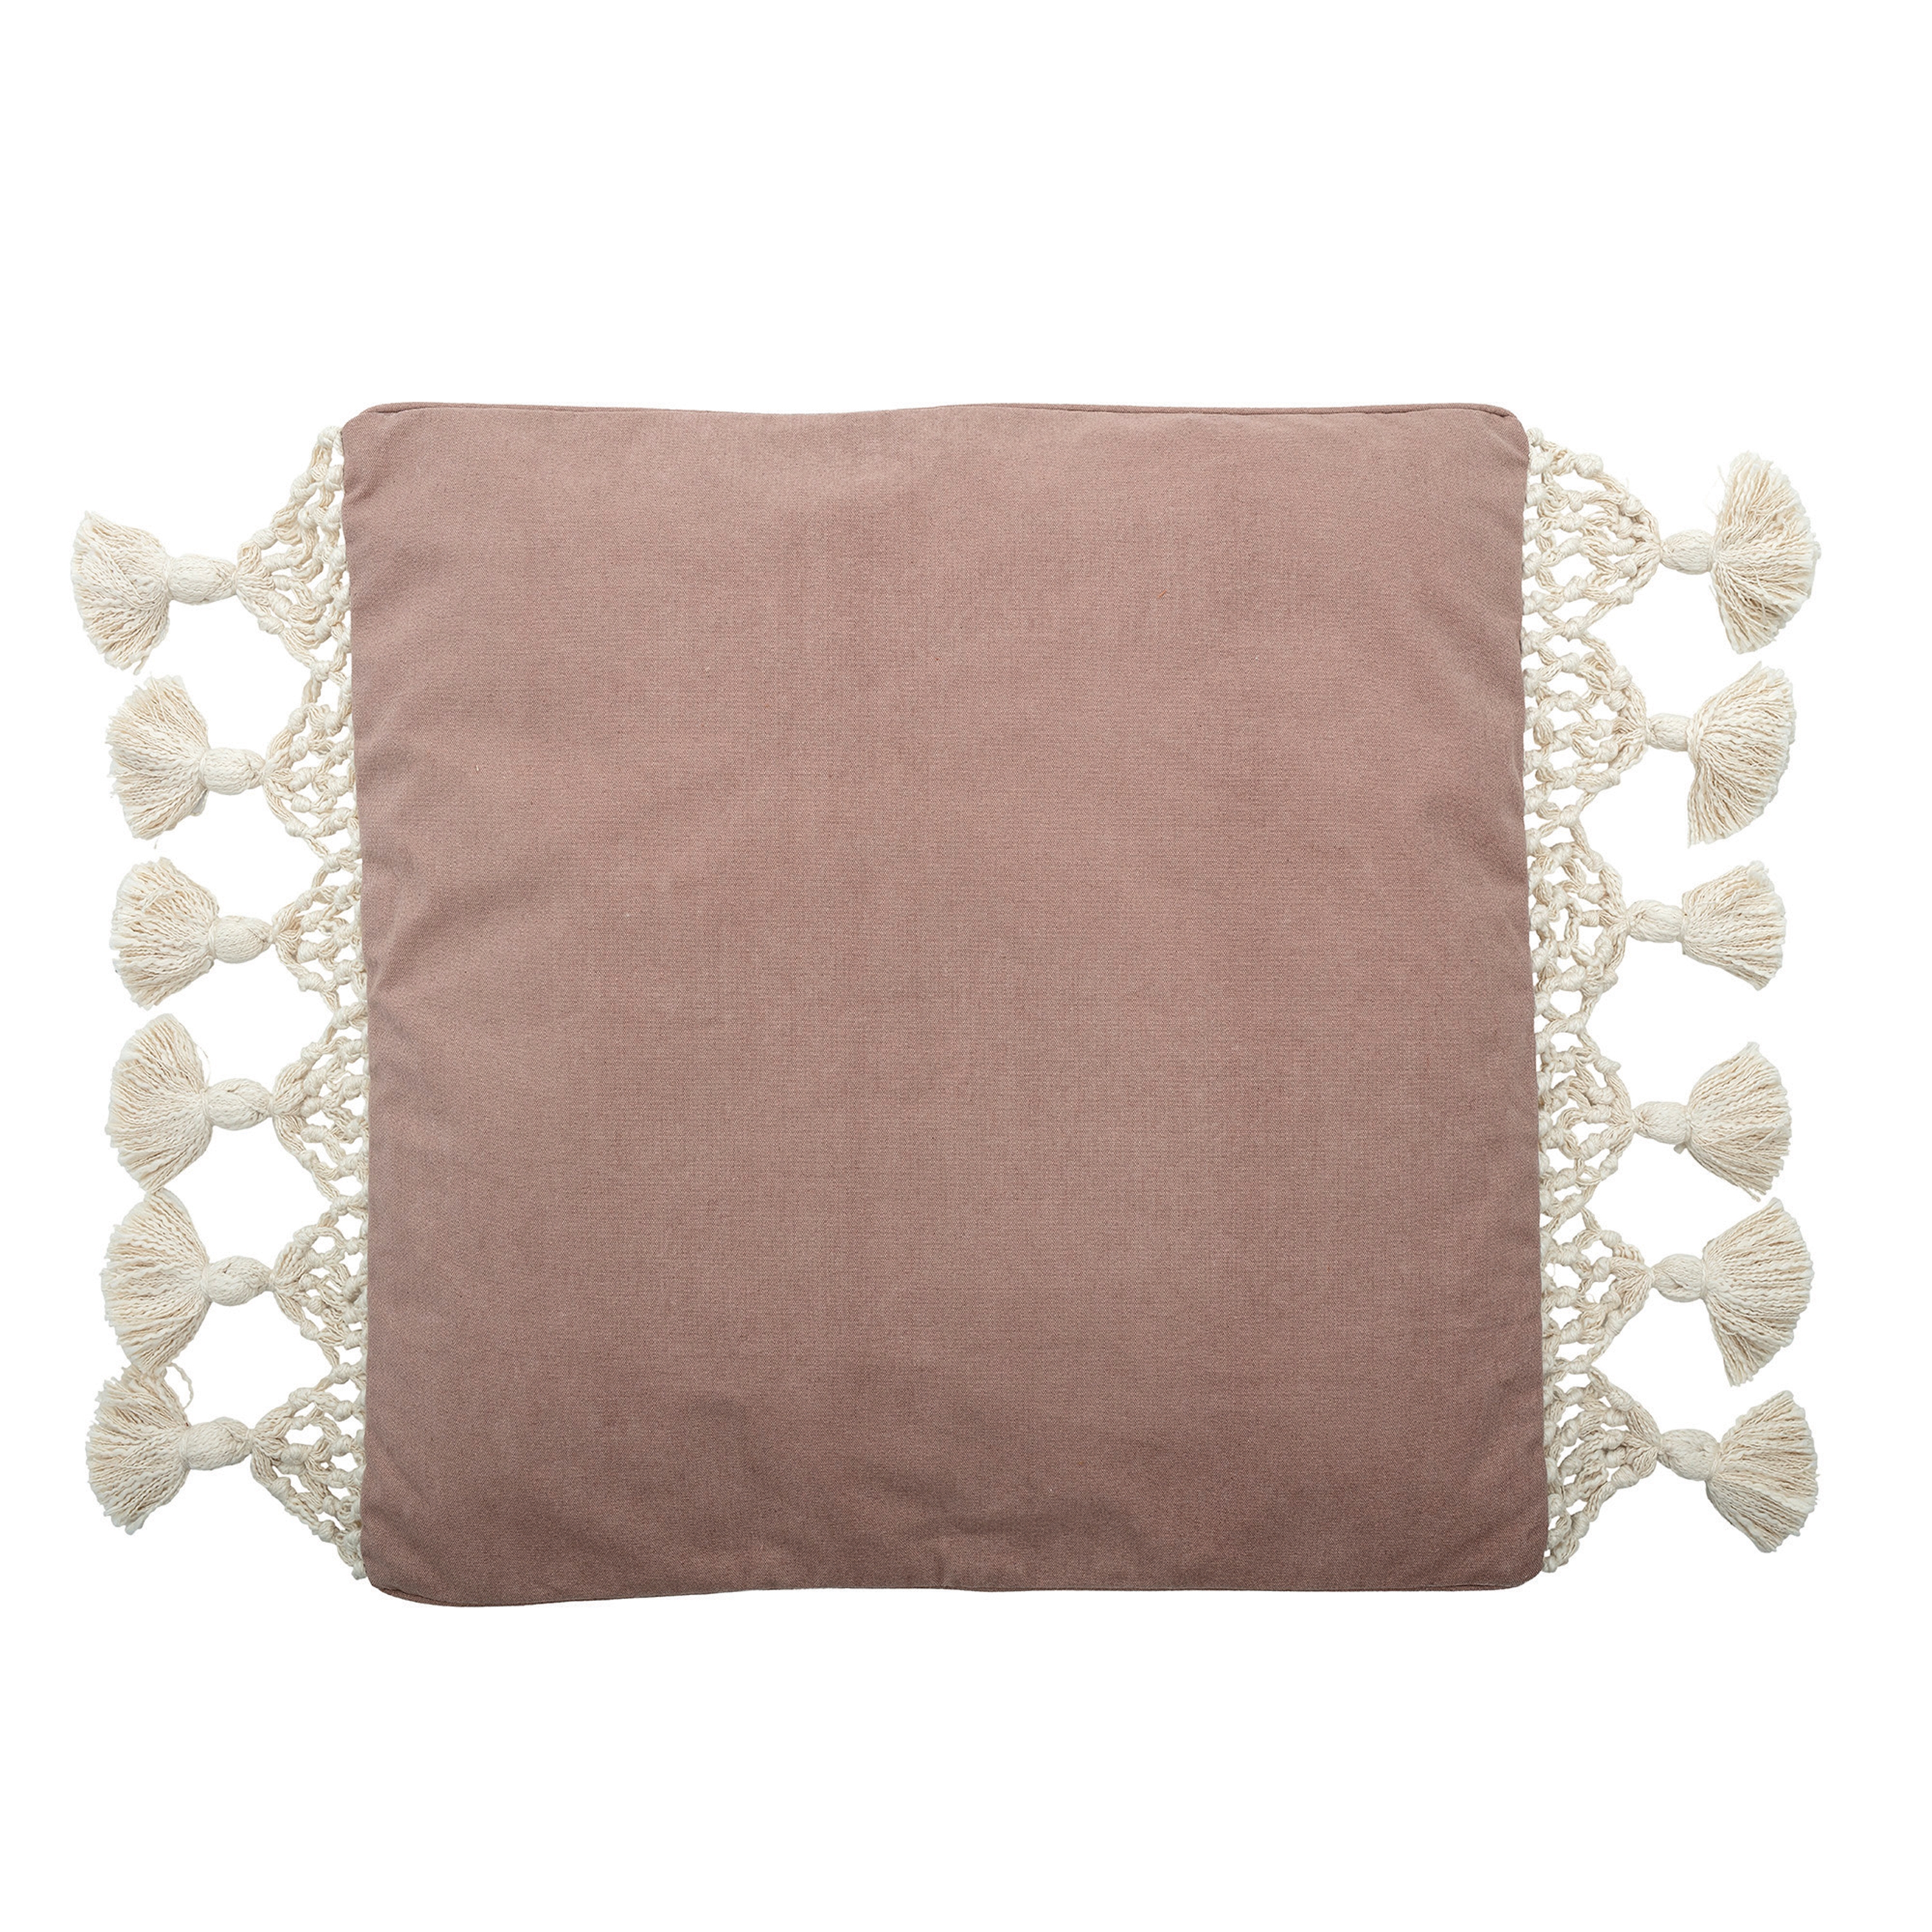 26" Square Cotton Woven Canvas Pillow with Macramé Trim & Tassel Ends - Image 0